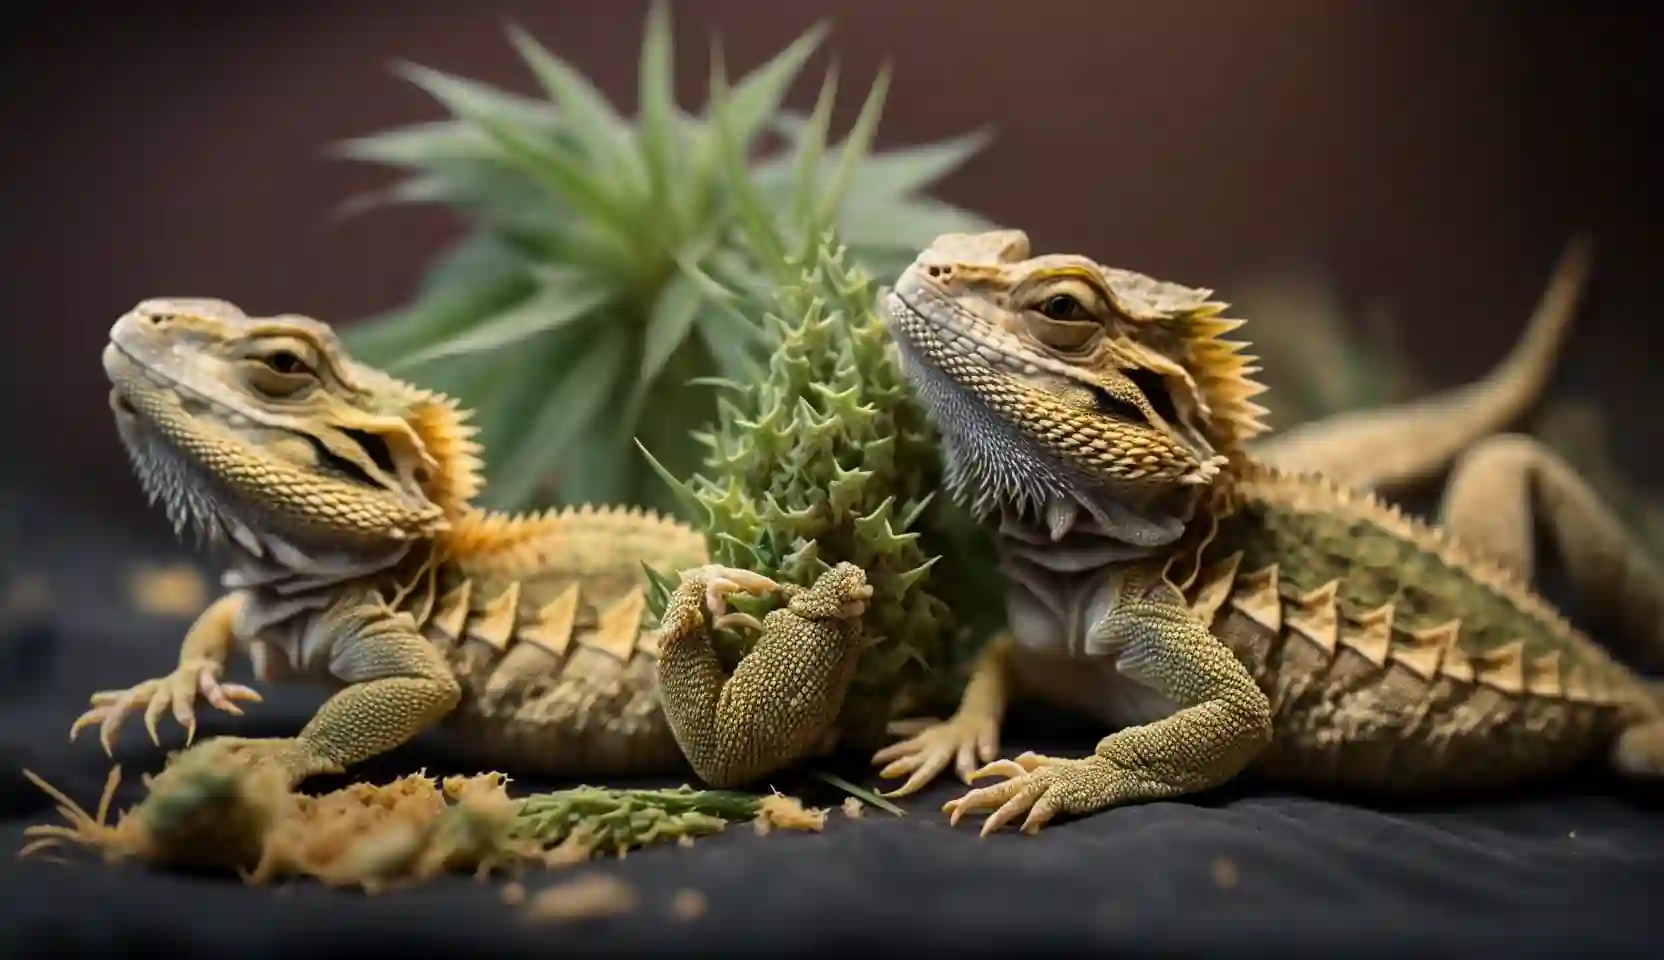 Can Bearded Dragons Eat Marijuana?